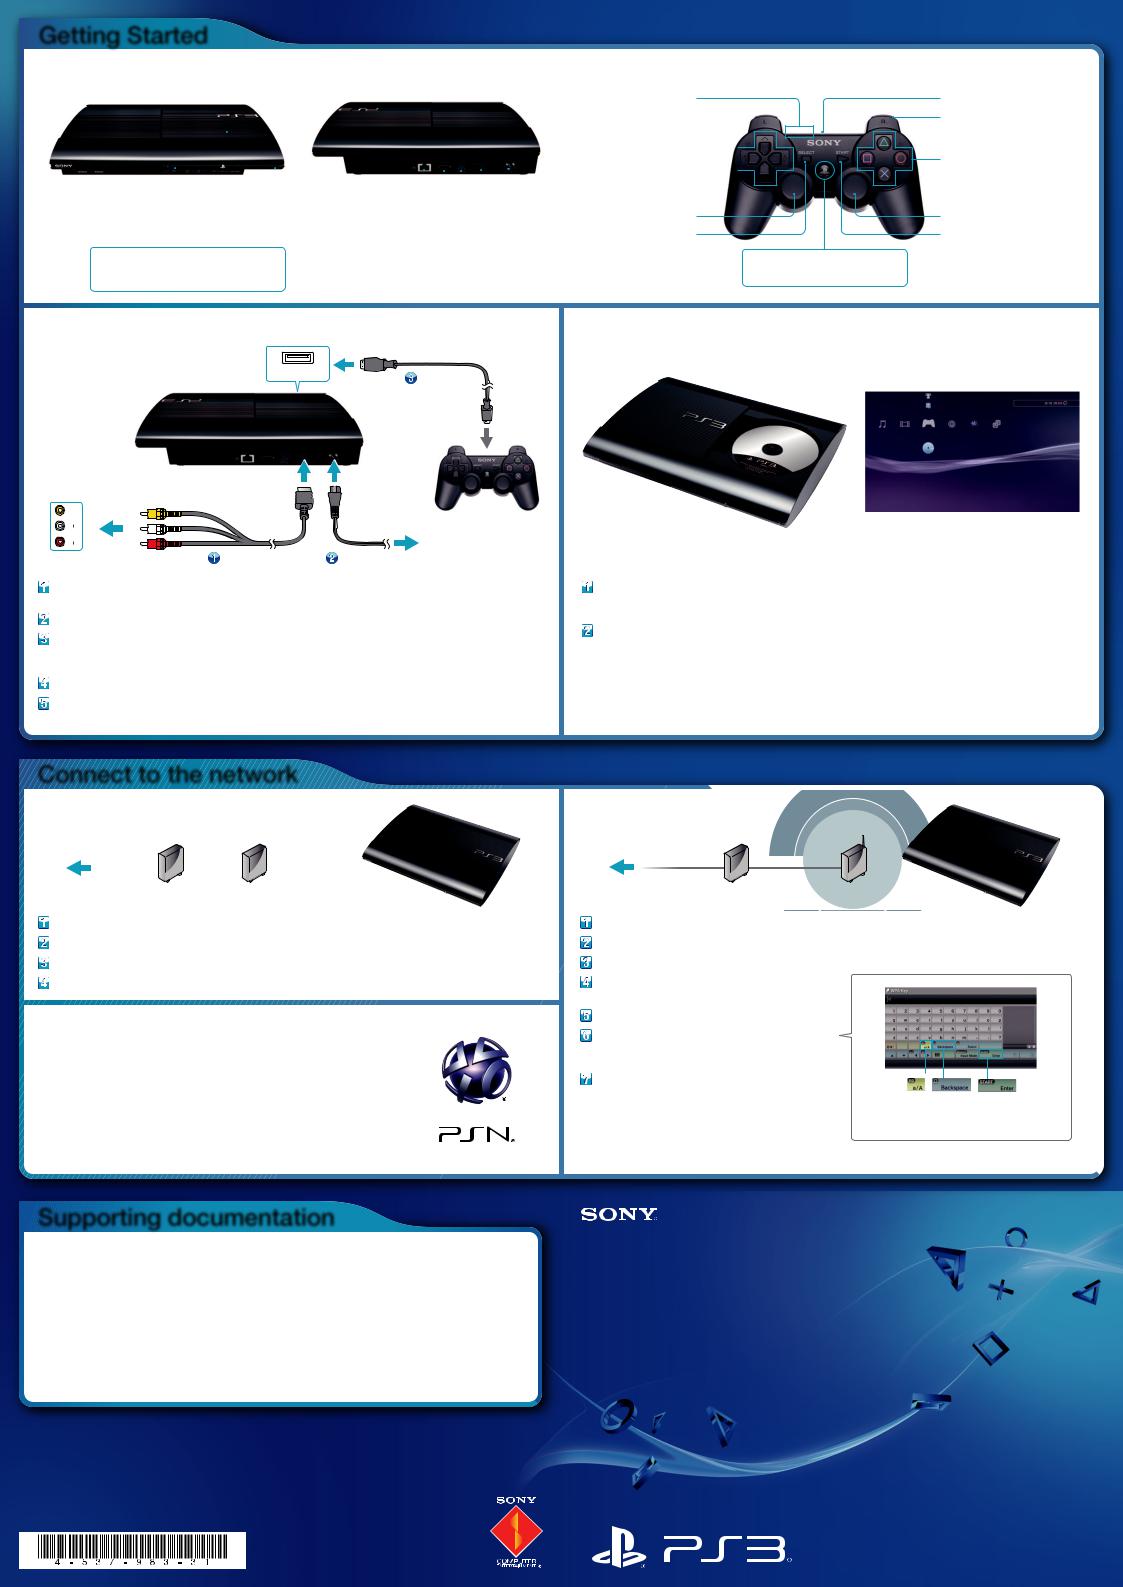 Sony CECH-4302, CECH-4303 Quick Start Guide